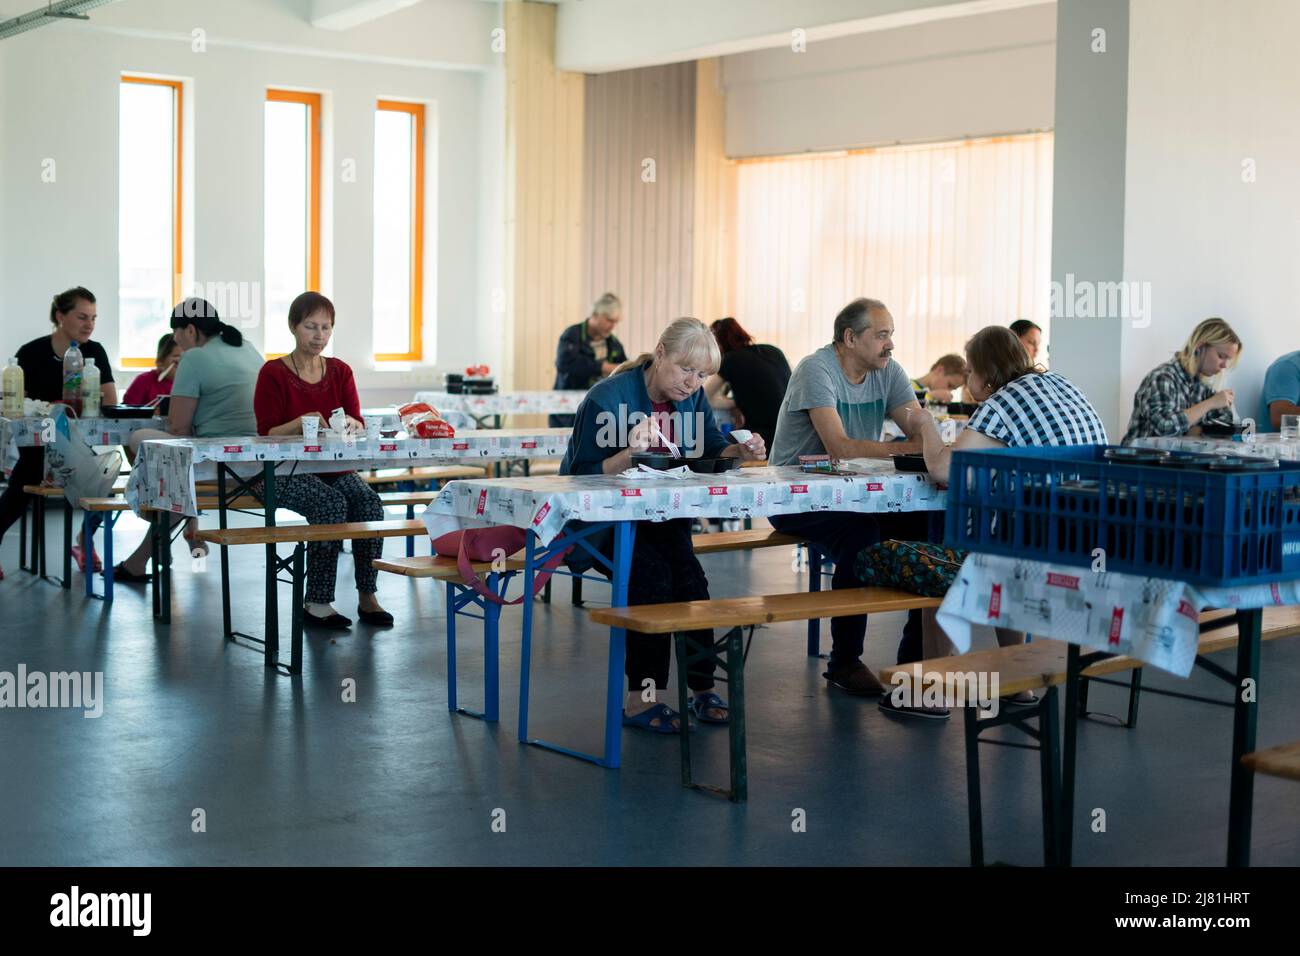 Ukrainische Flüchtlinge essen in der Kantine eines Flüchtlingszentrums in Iasi, Rumänien, zu Mittag. Bilddatum: Mittwoch, 11. Mai 2022. Seit der Eröffnung am 26. März dieses Jahres hat das Zentrum mehr als 900 Frauen und Kindern geholfen, die Unterkünfte, Lebensmittel und Vorräte suchen. Stockfoto